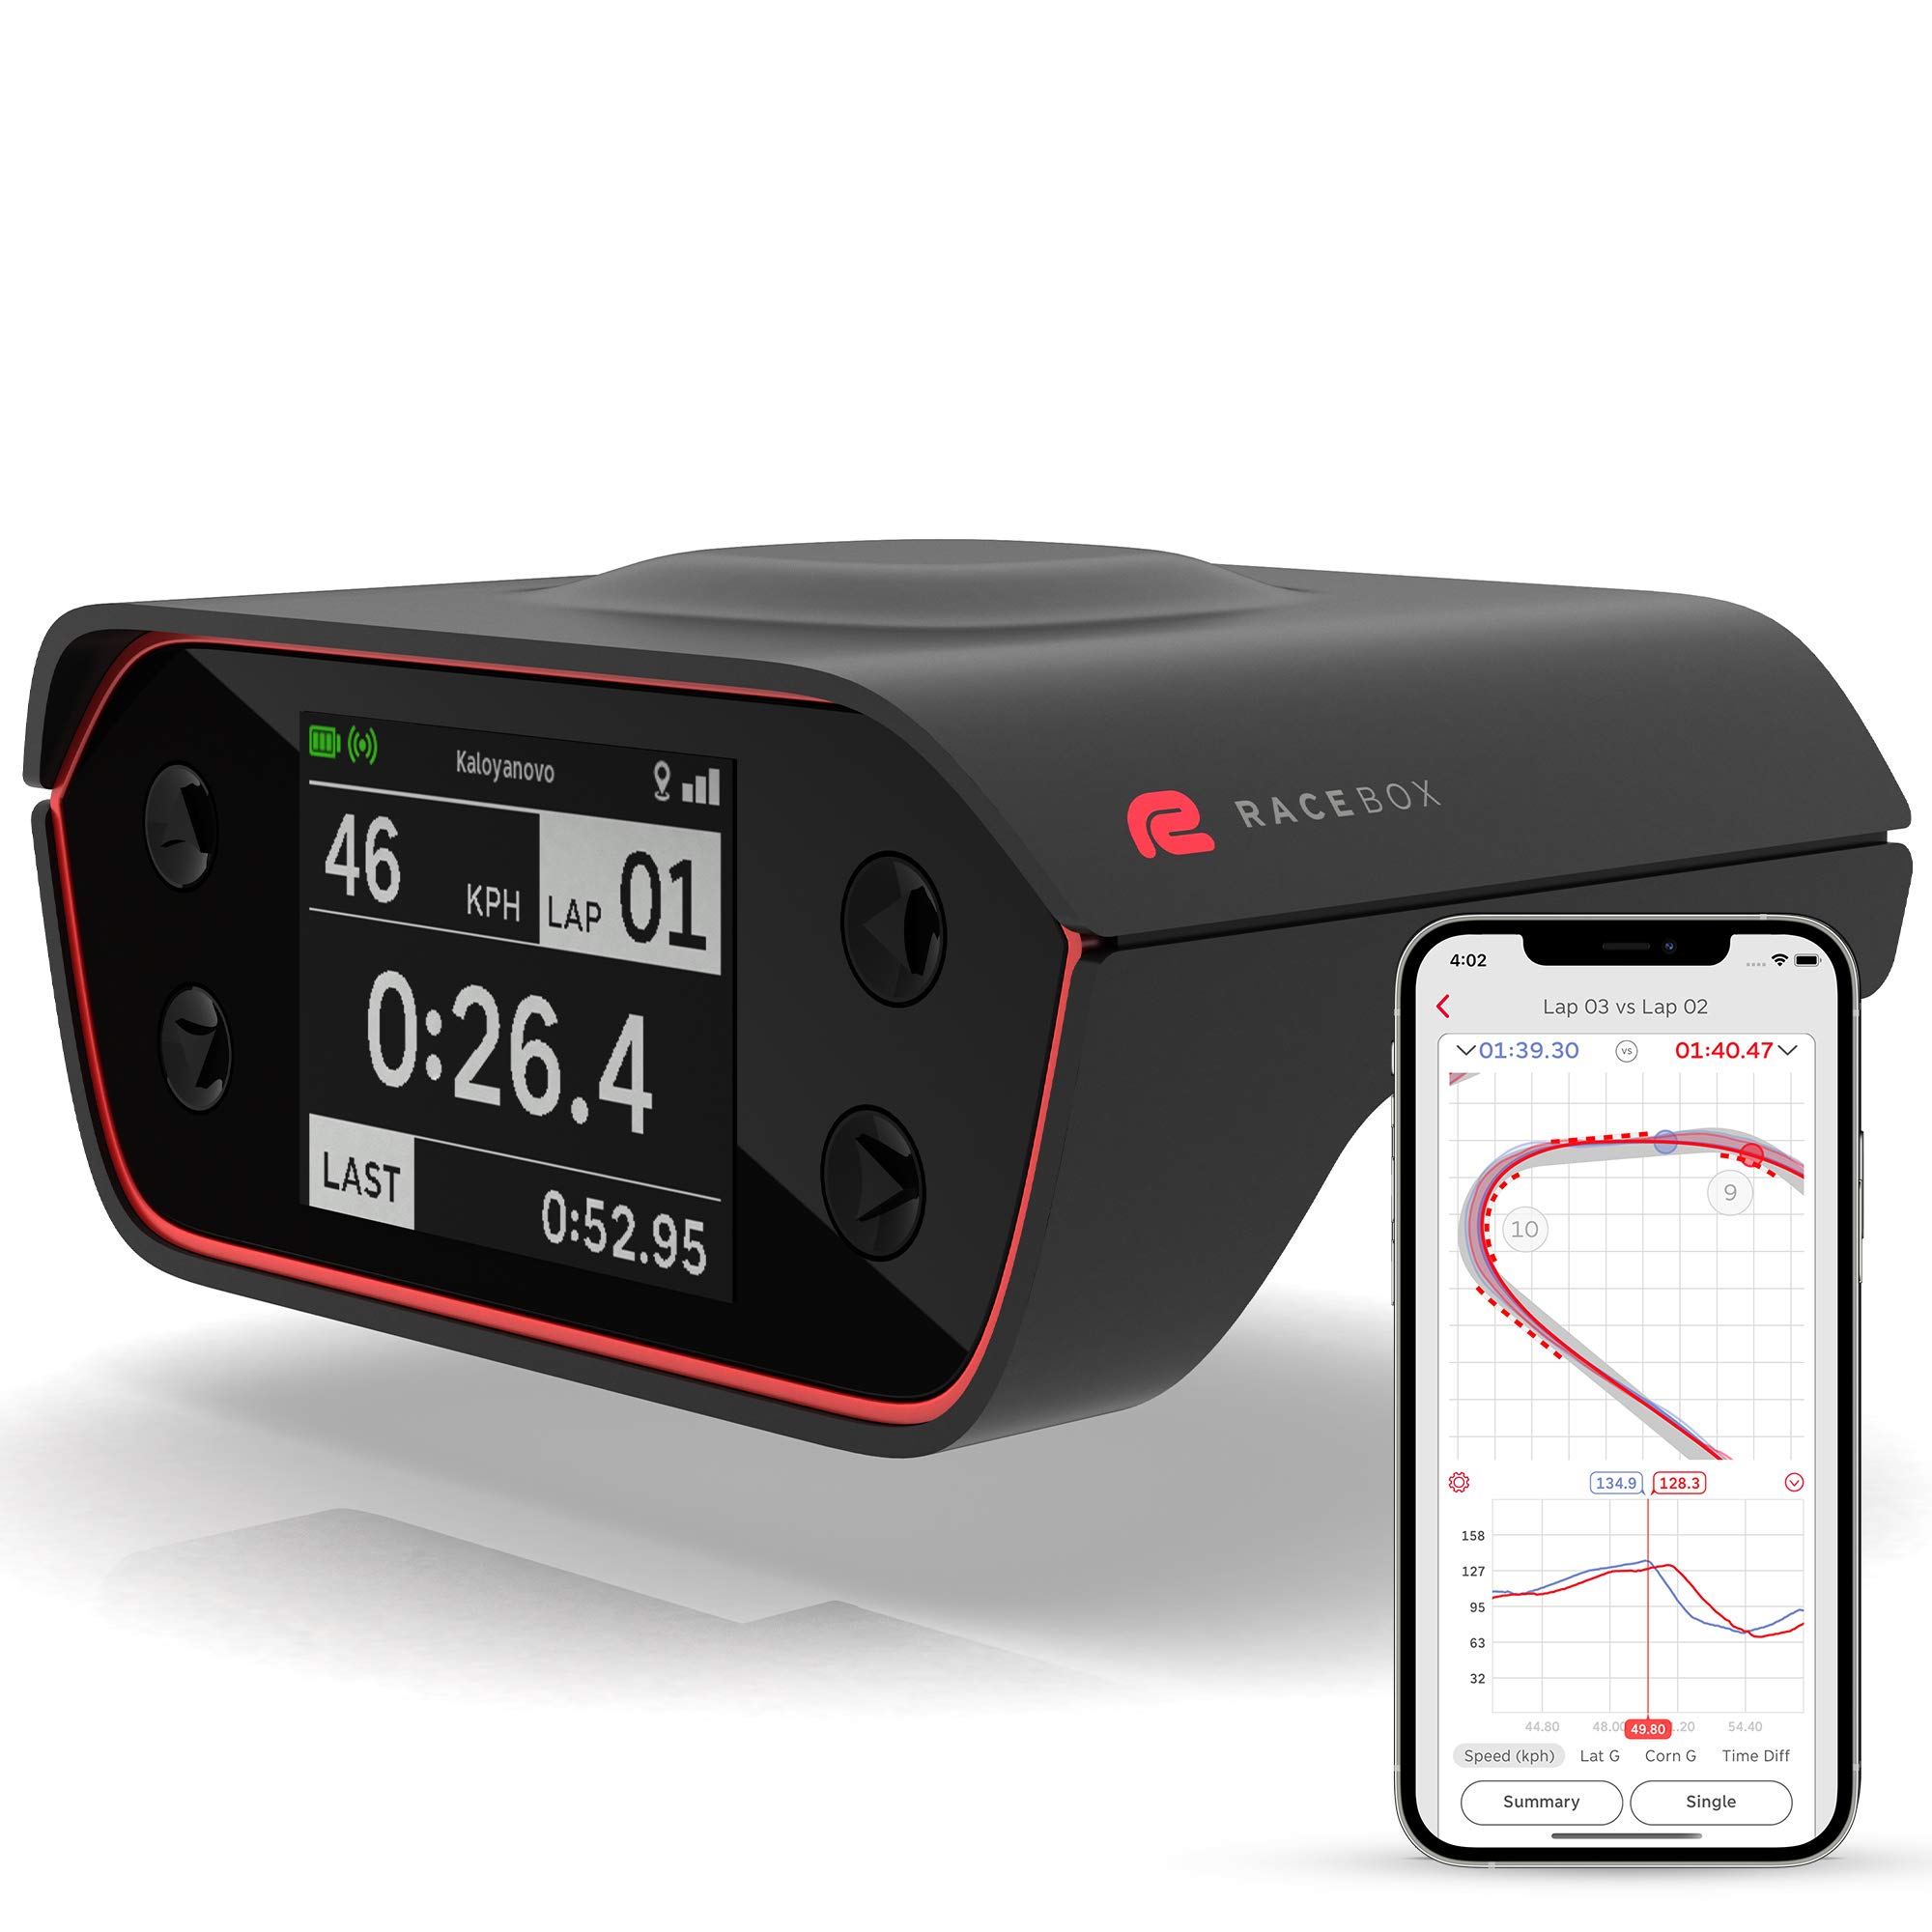 RaceBox 10Hz GPS 公式ベースパフォーマンスメーターボックス、モバイルアプリ付き - カーラップ...